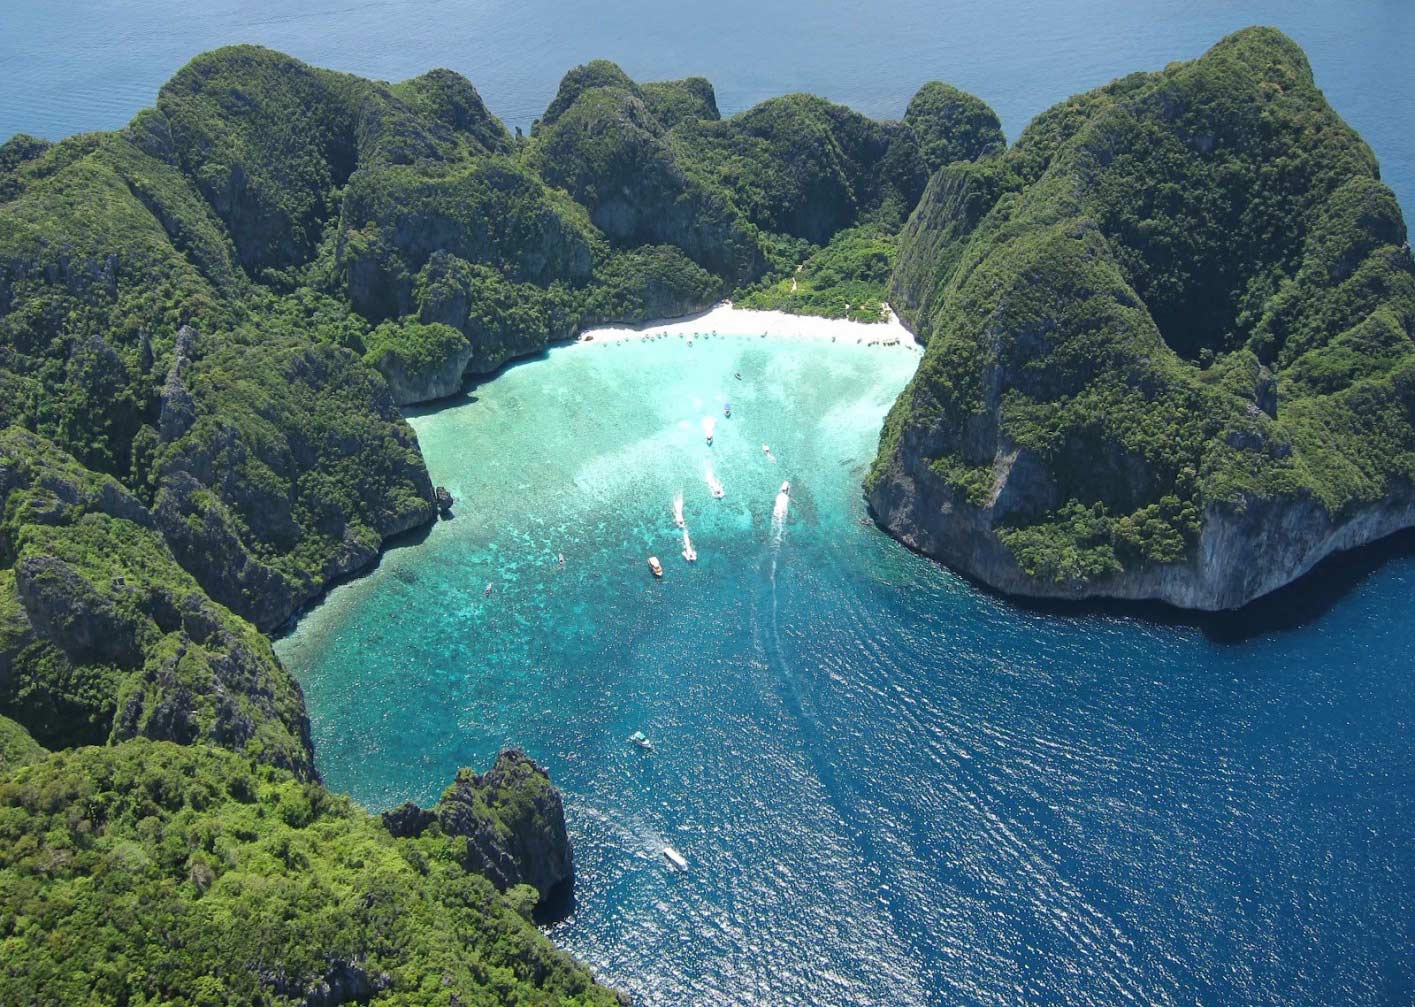 Майя бэй (maya bay) - место где снимали фильм "пляж" или экскурсия вокруг острова пхи-пхи